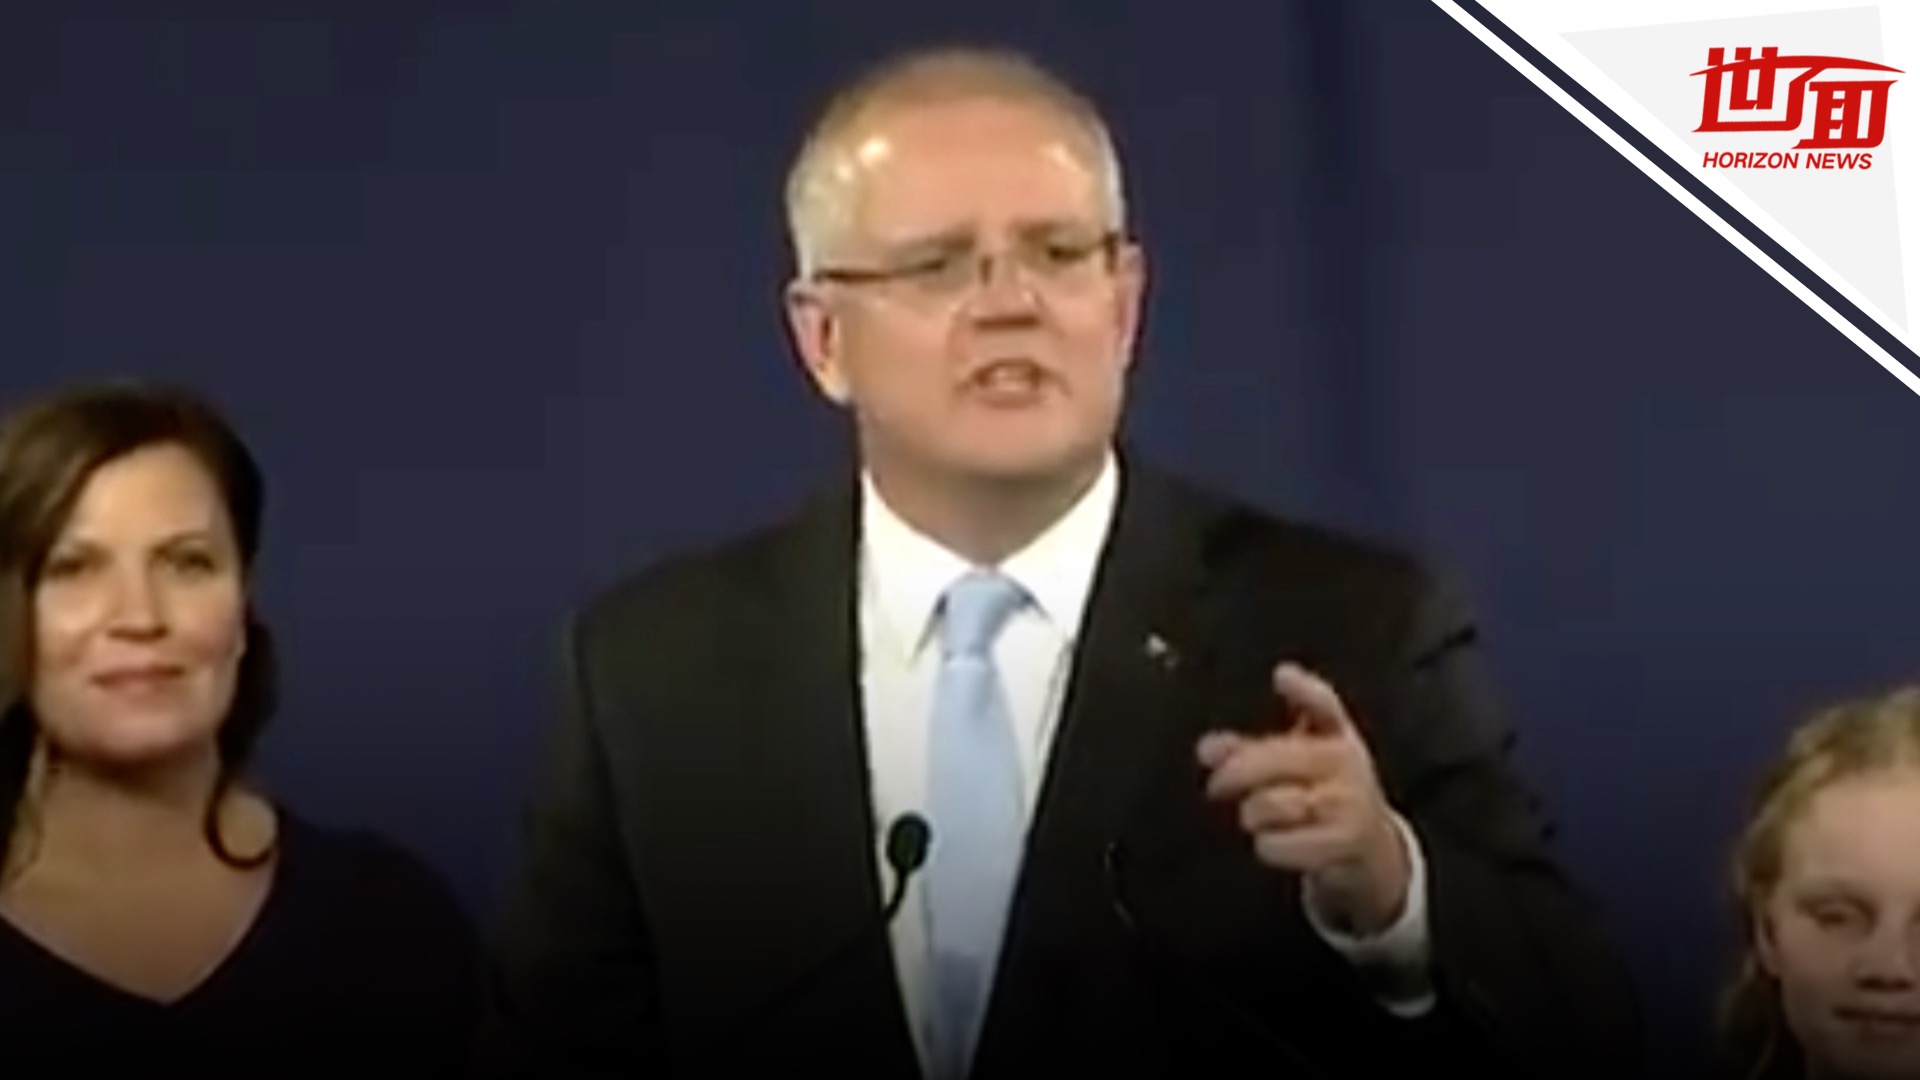 澳大利亚总理莫里森发表胜选演讲:我一直相信奇